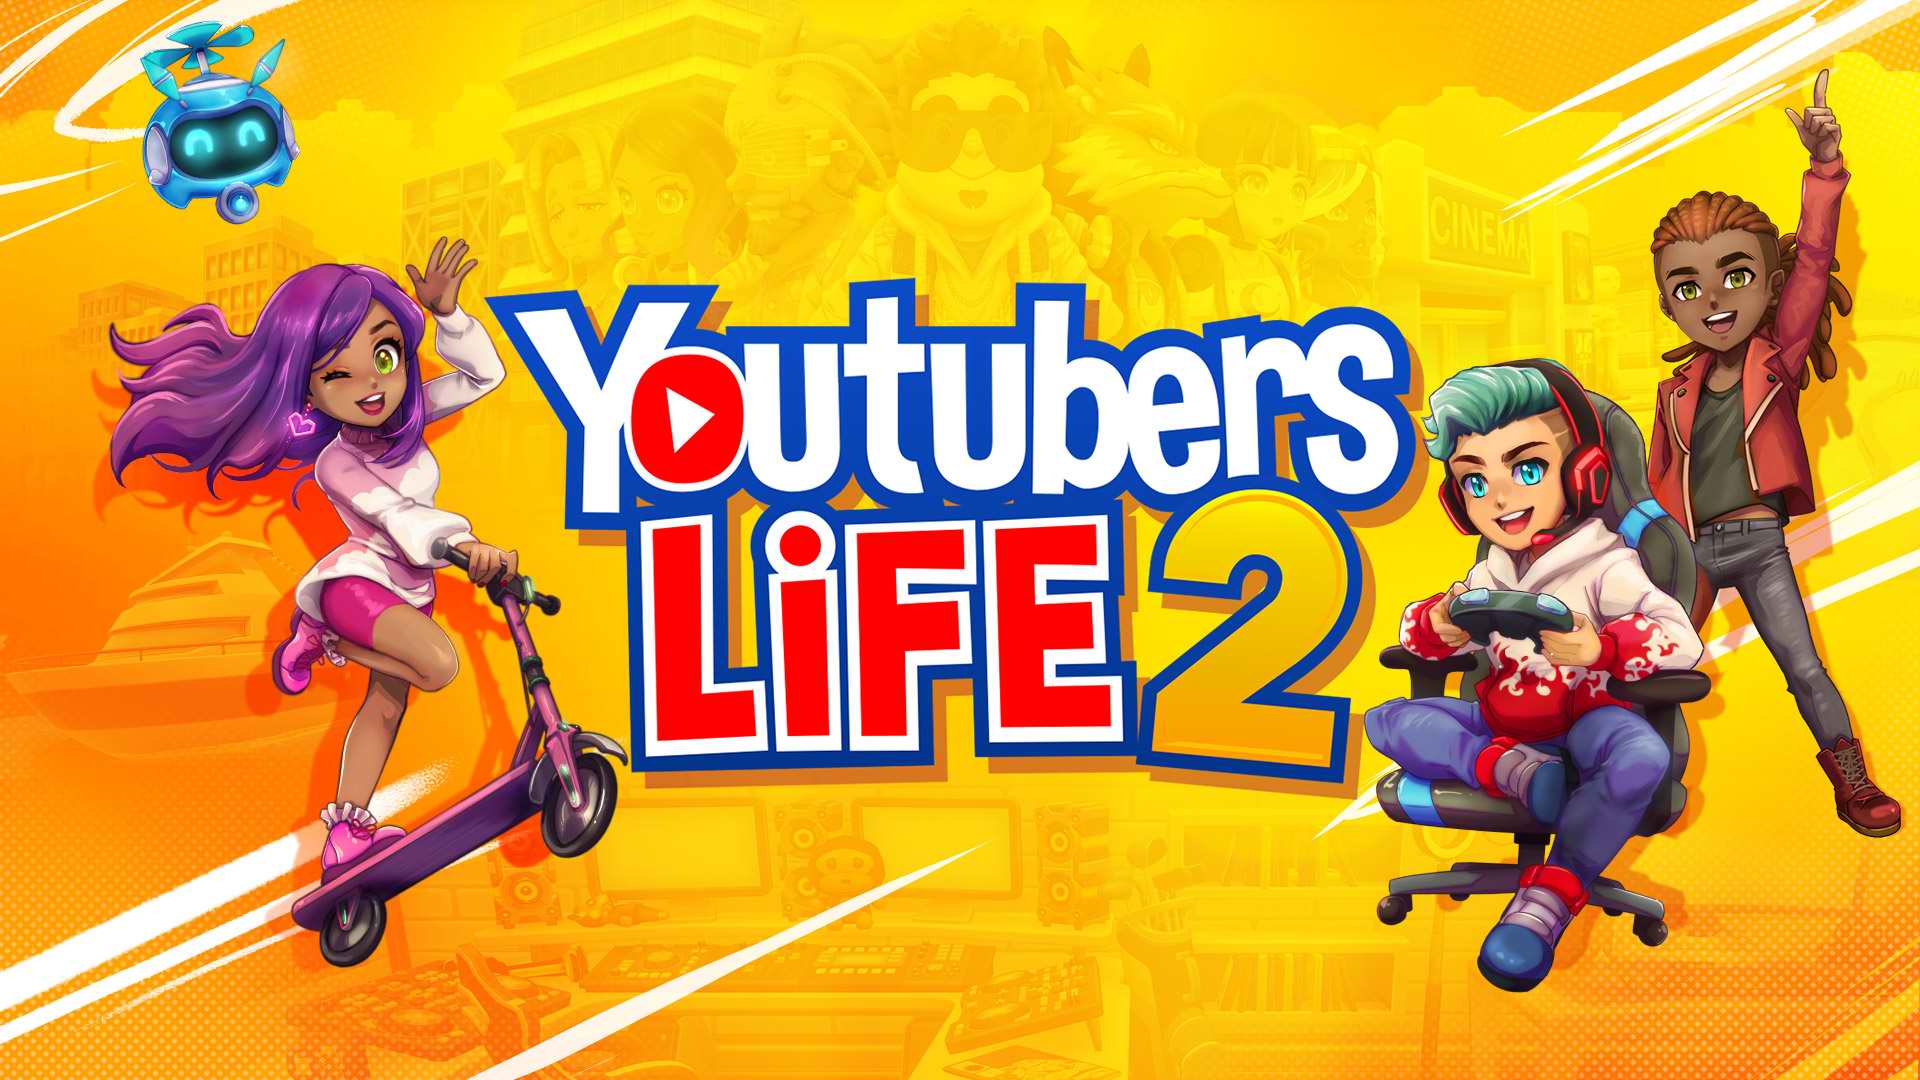 بررسی بازی Youtubers Life 2 – من یک یوتوبر هستم!